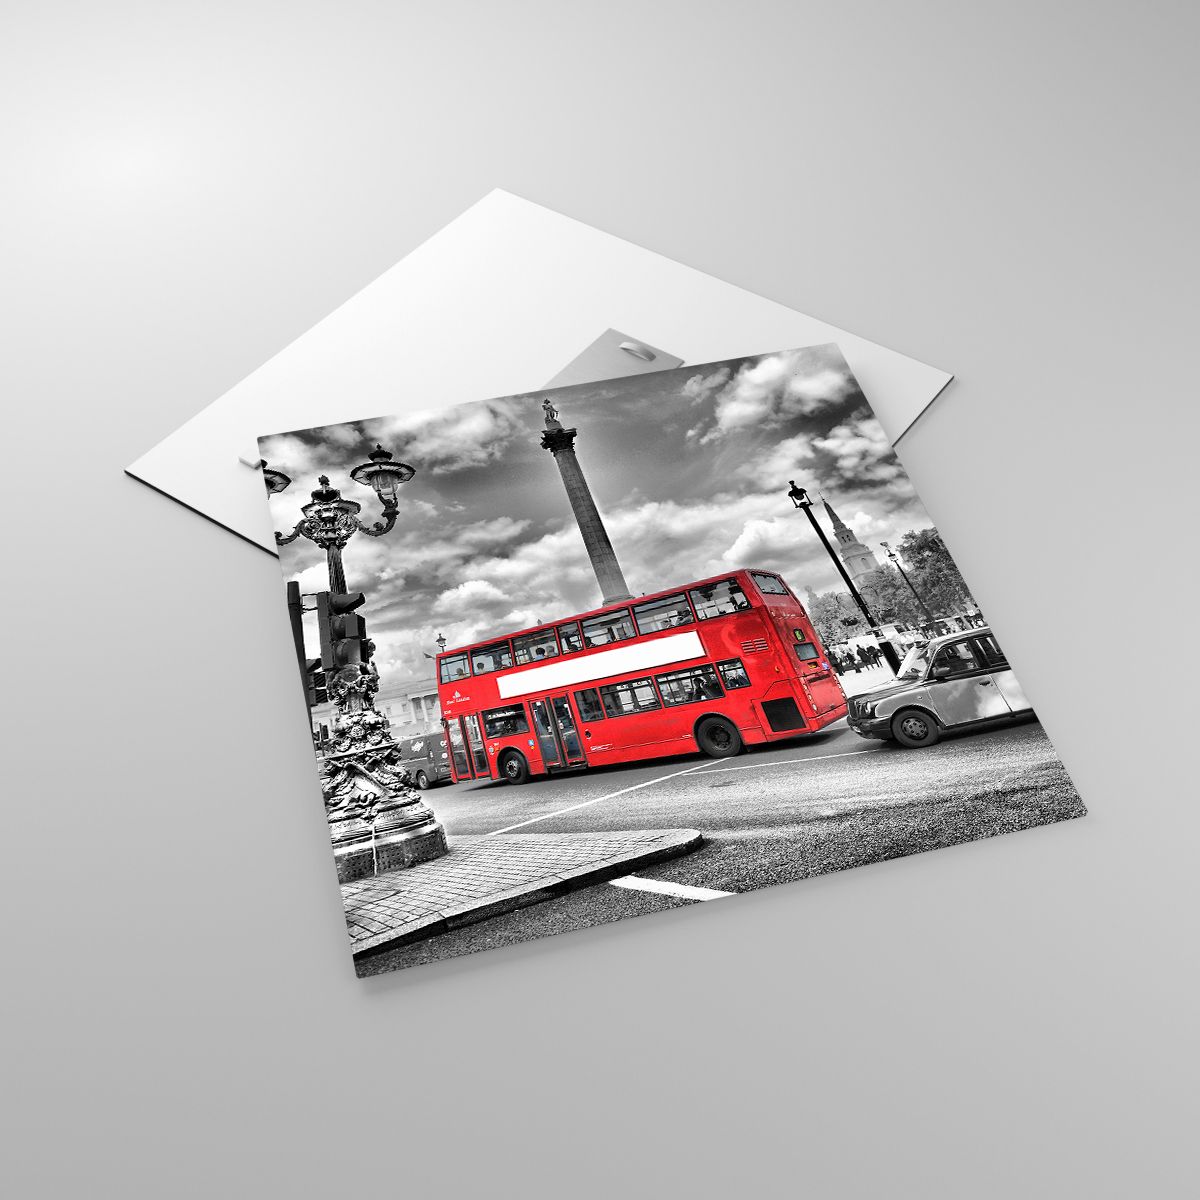 Glasbild Städte, Glasbild London, Glasbild Die Architektur, Glasbild Roter Bus, Glasbild Reisen